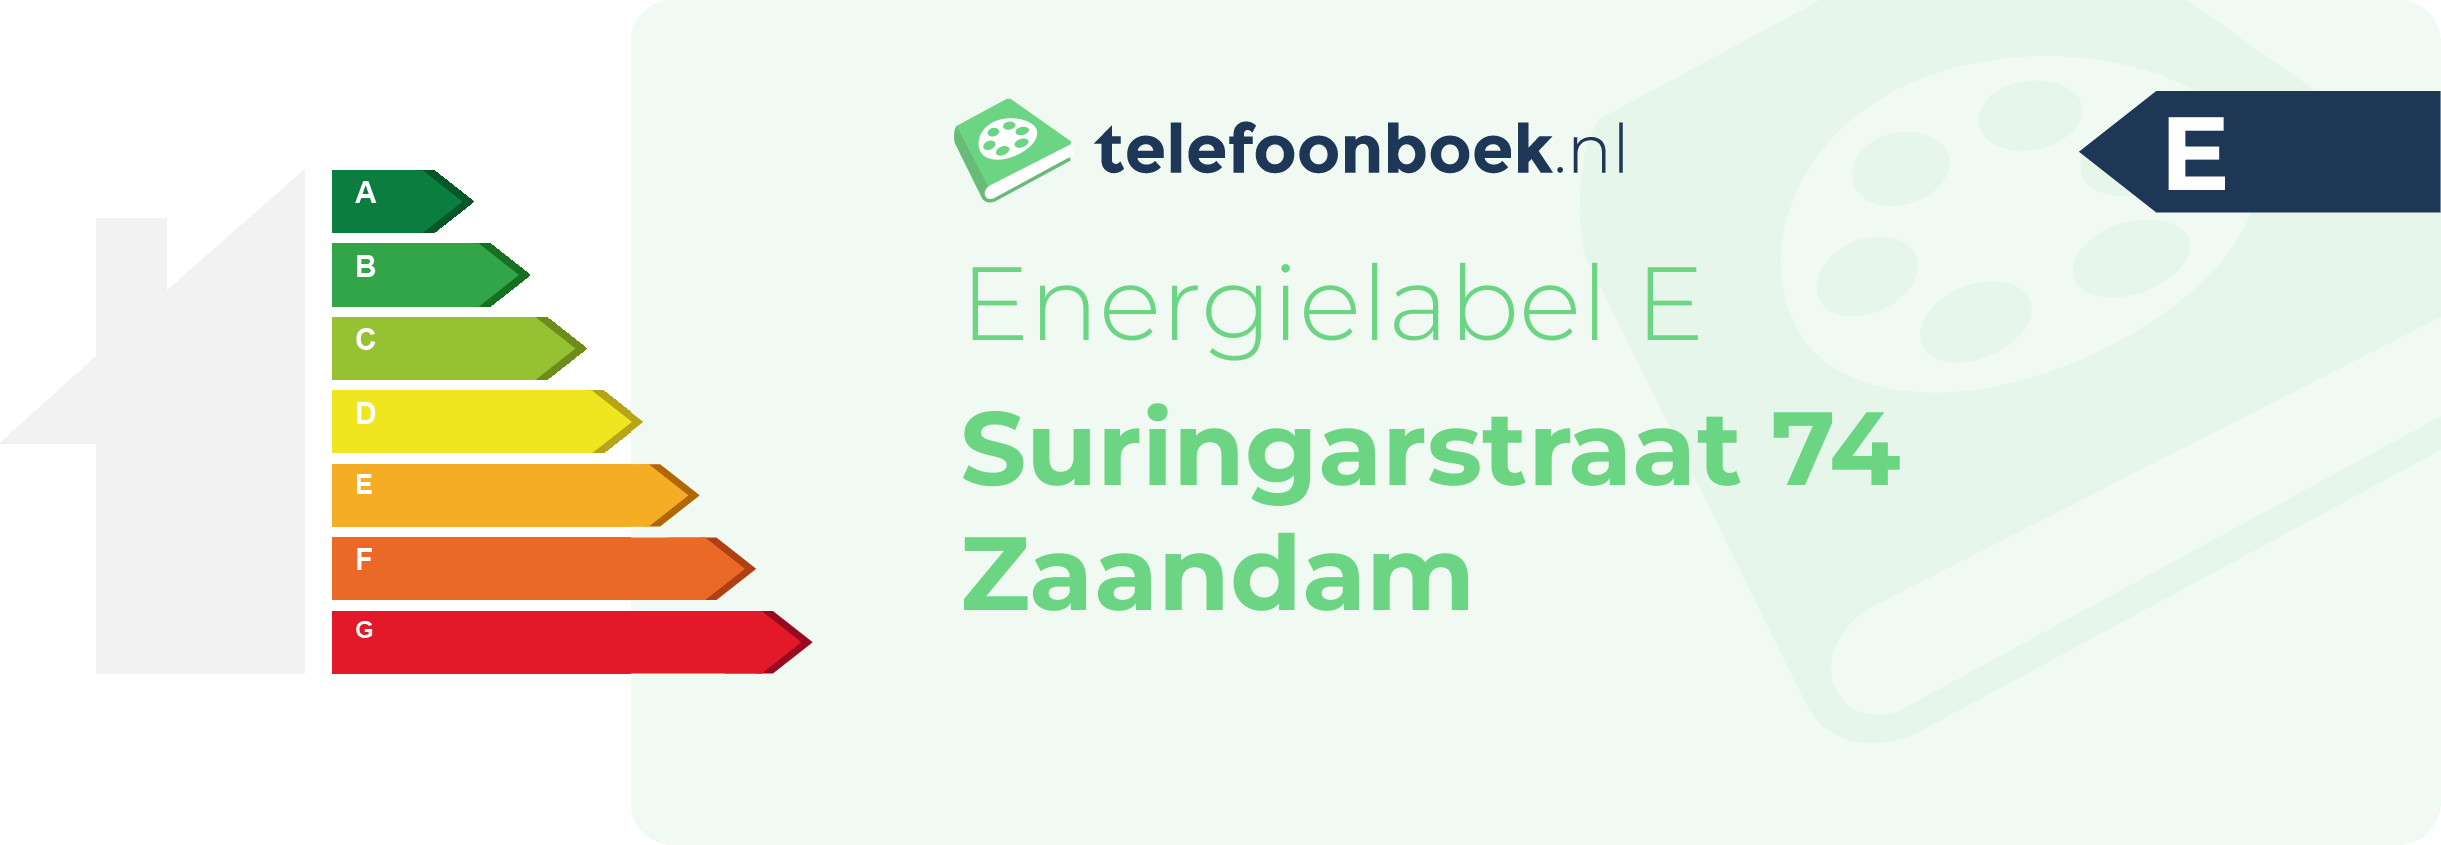 Energielabel Suringarstraat 74 Zaandam